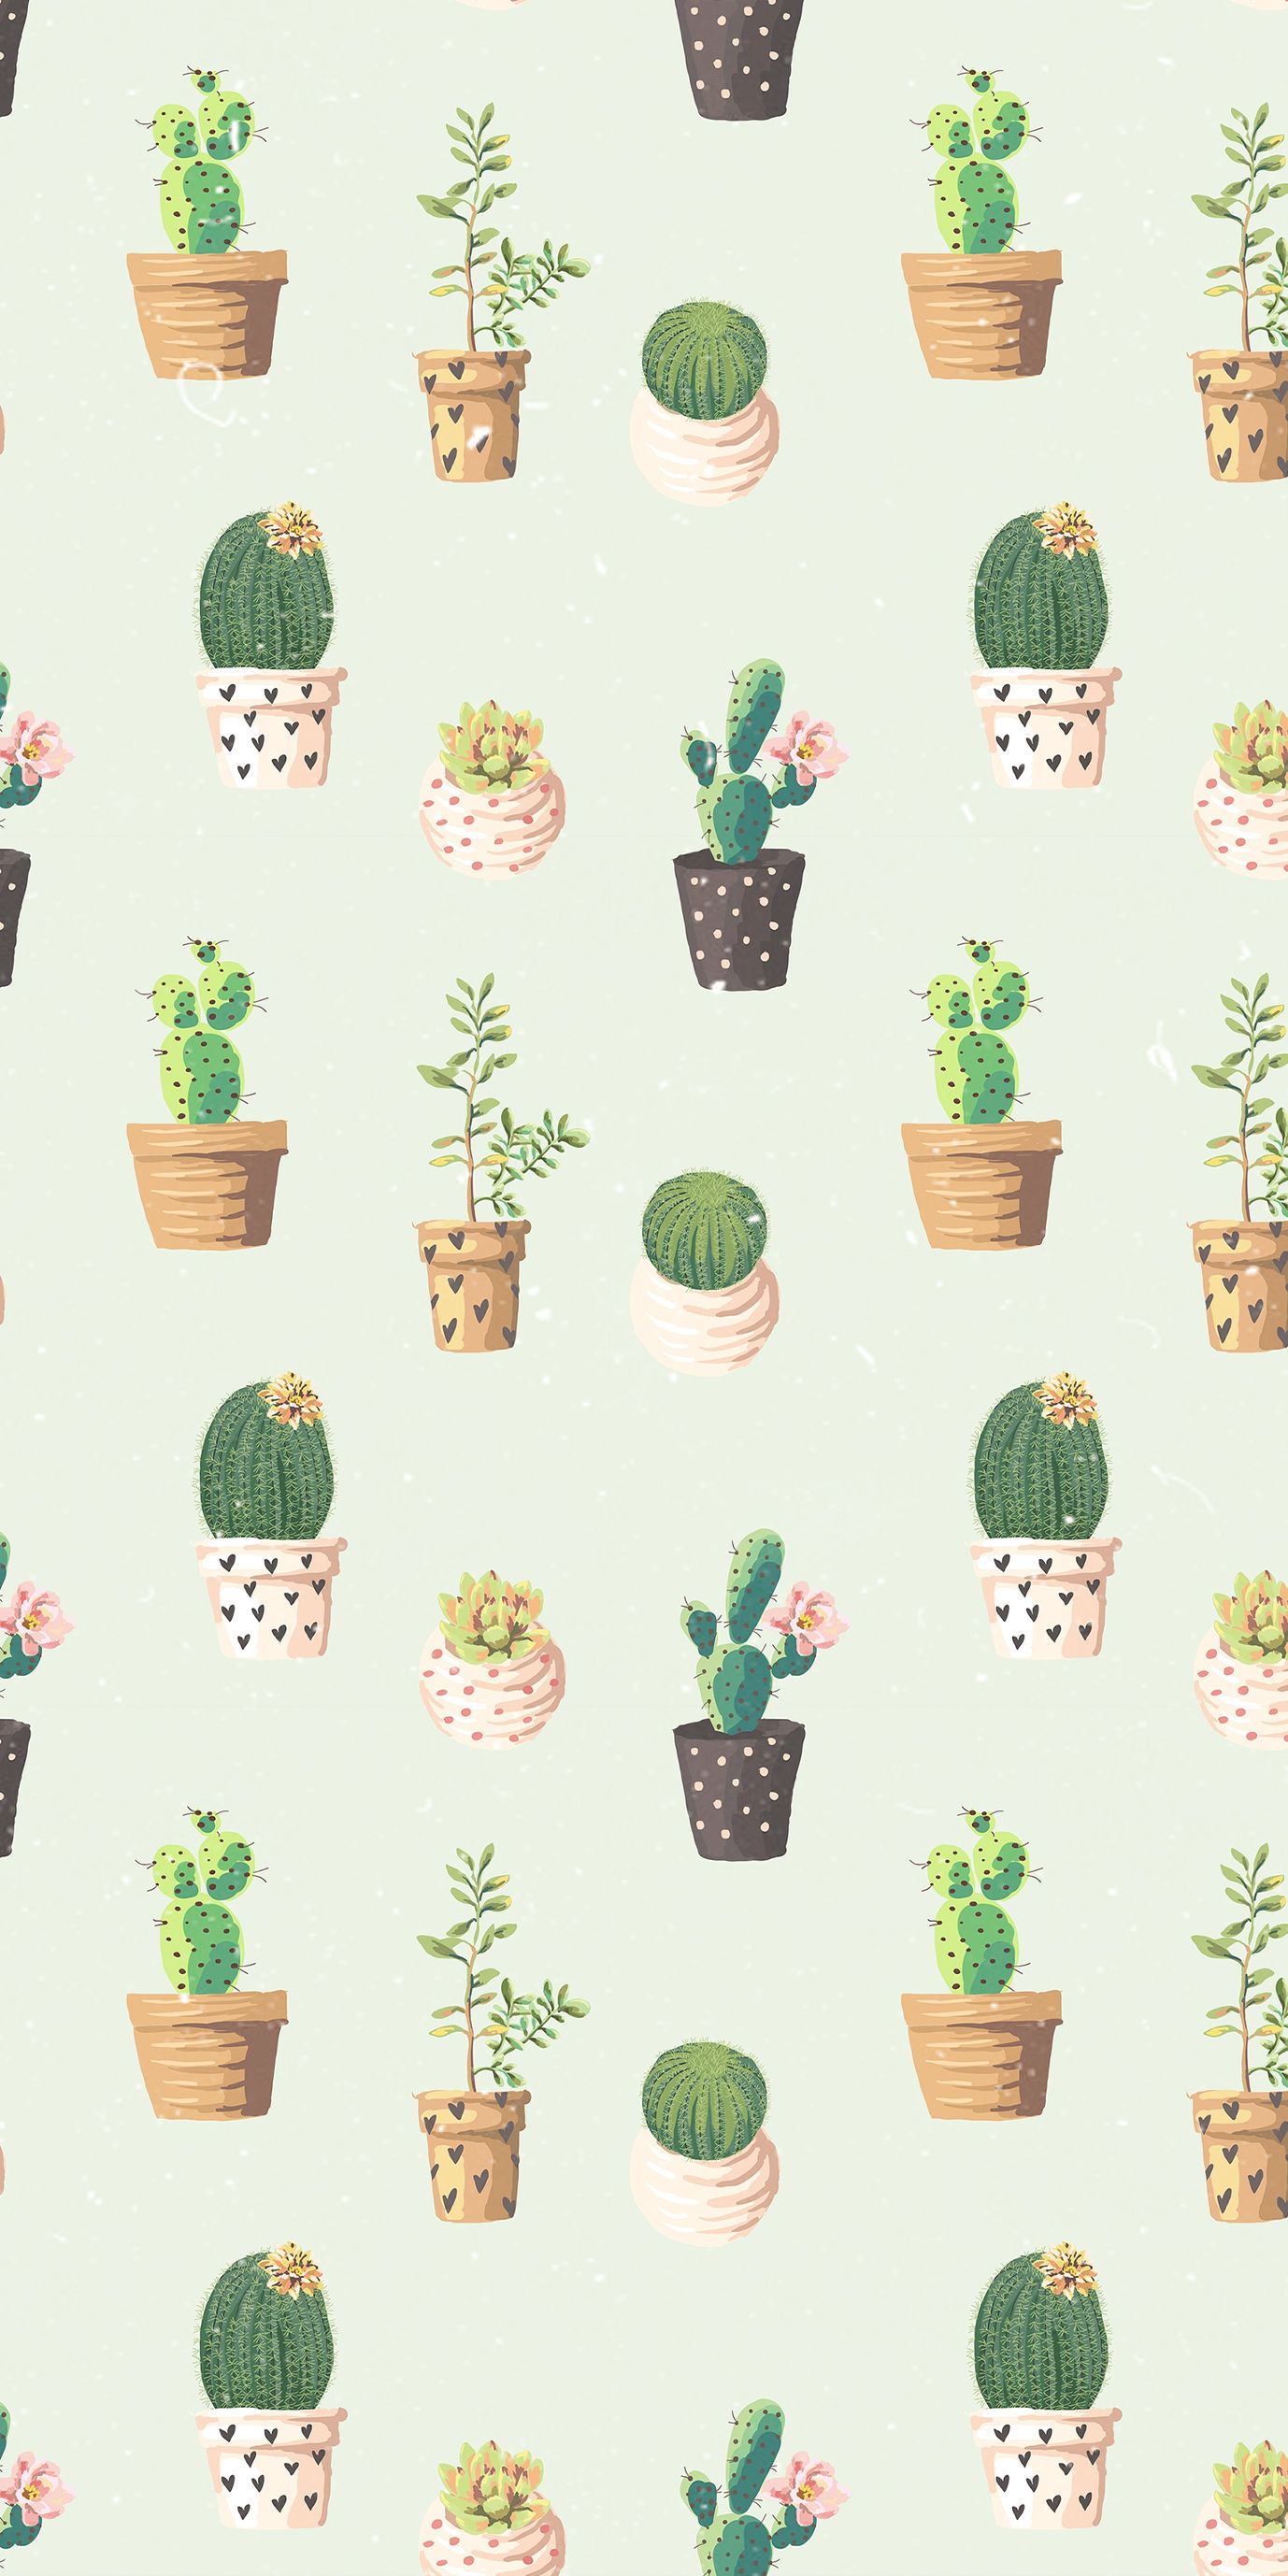 cactus wallpaper patterm iphone. Succulents wallpaper, Cute wallpaper for phone, iPhone background pattern